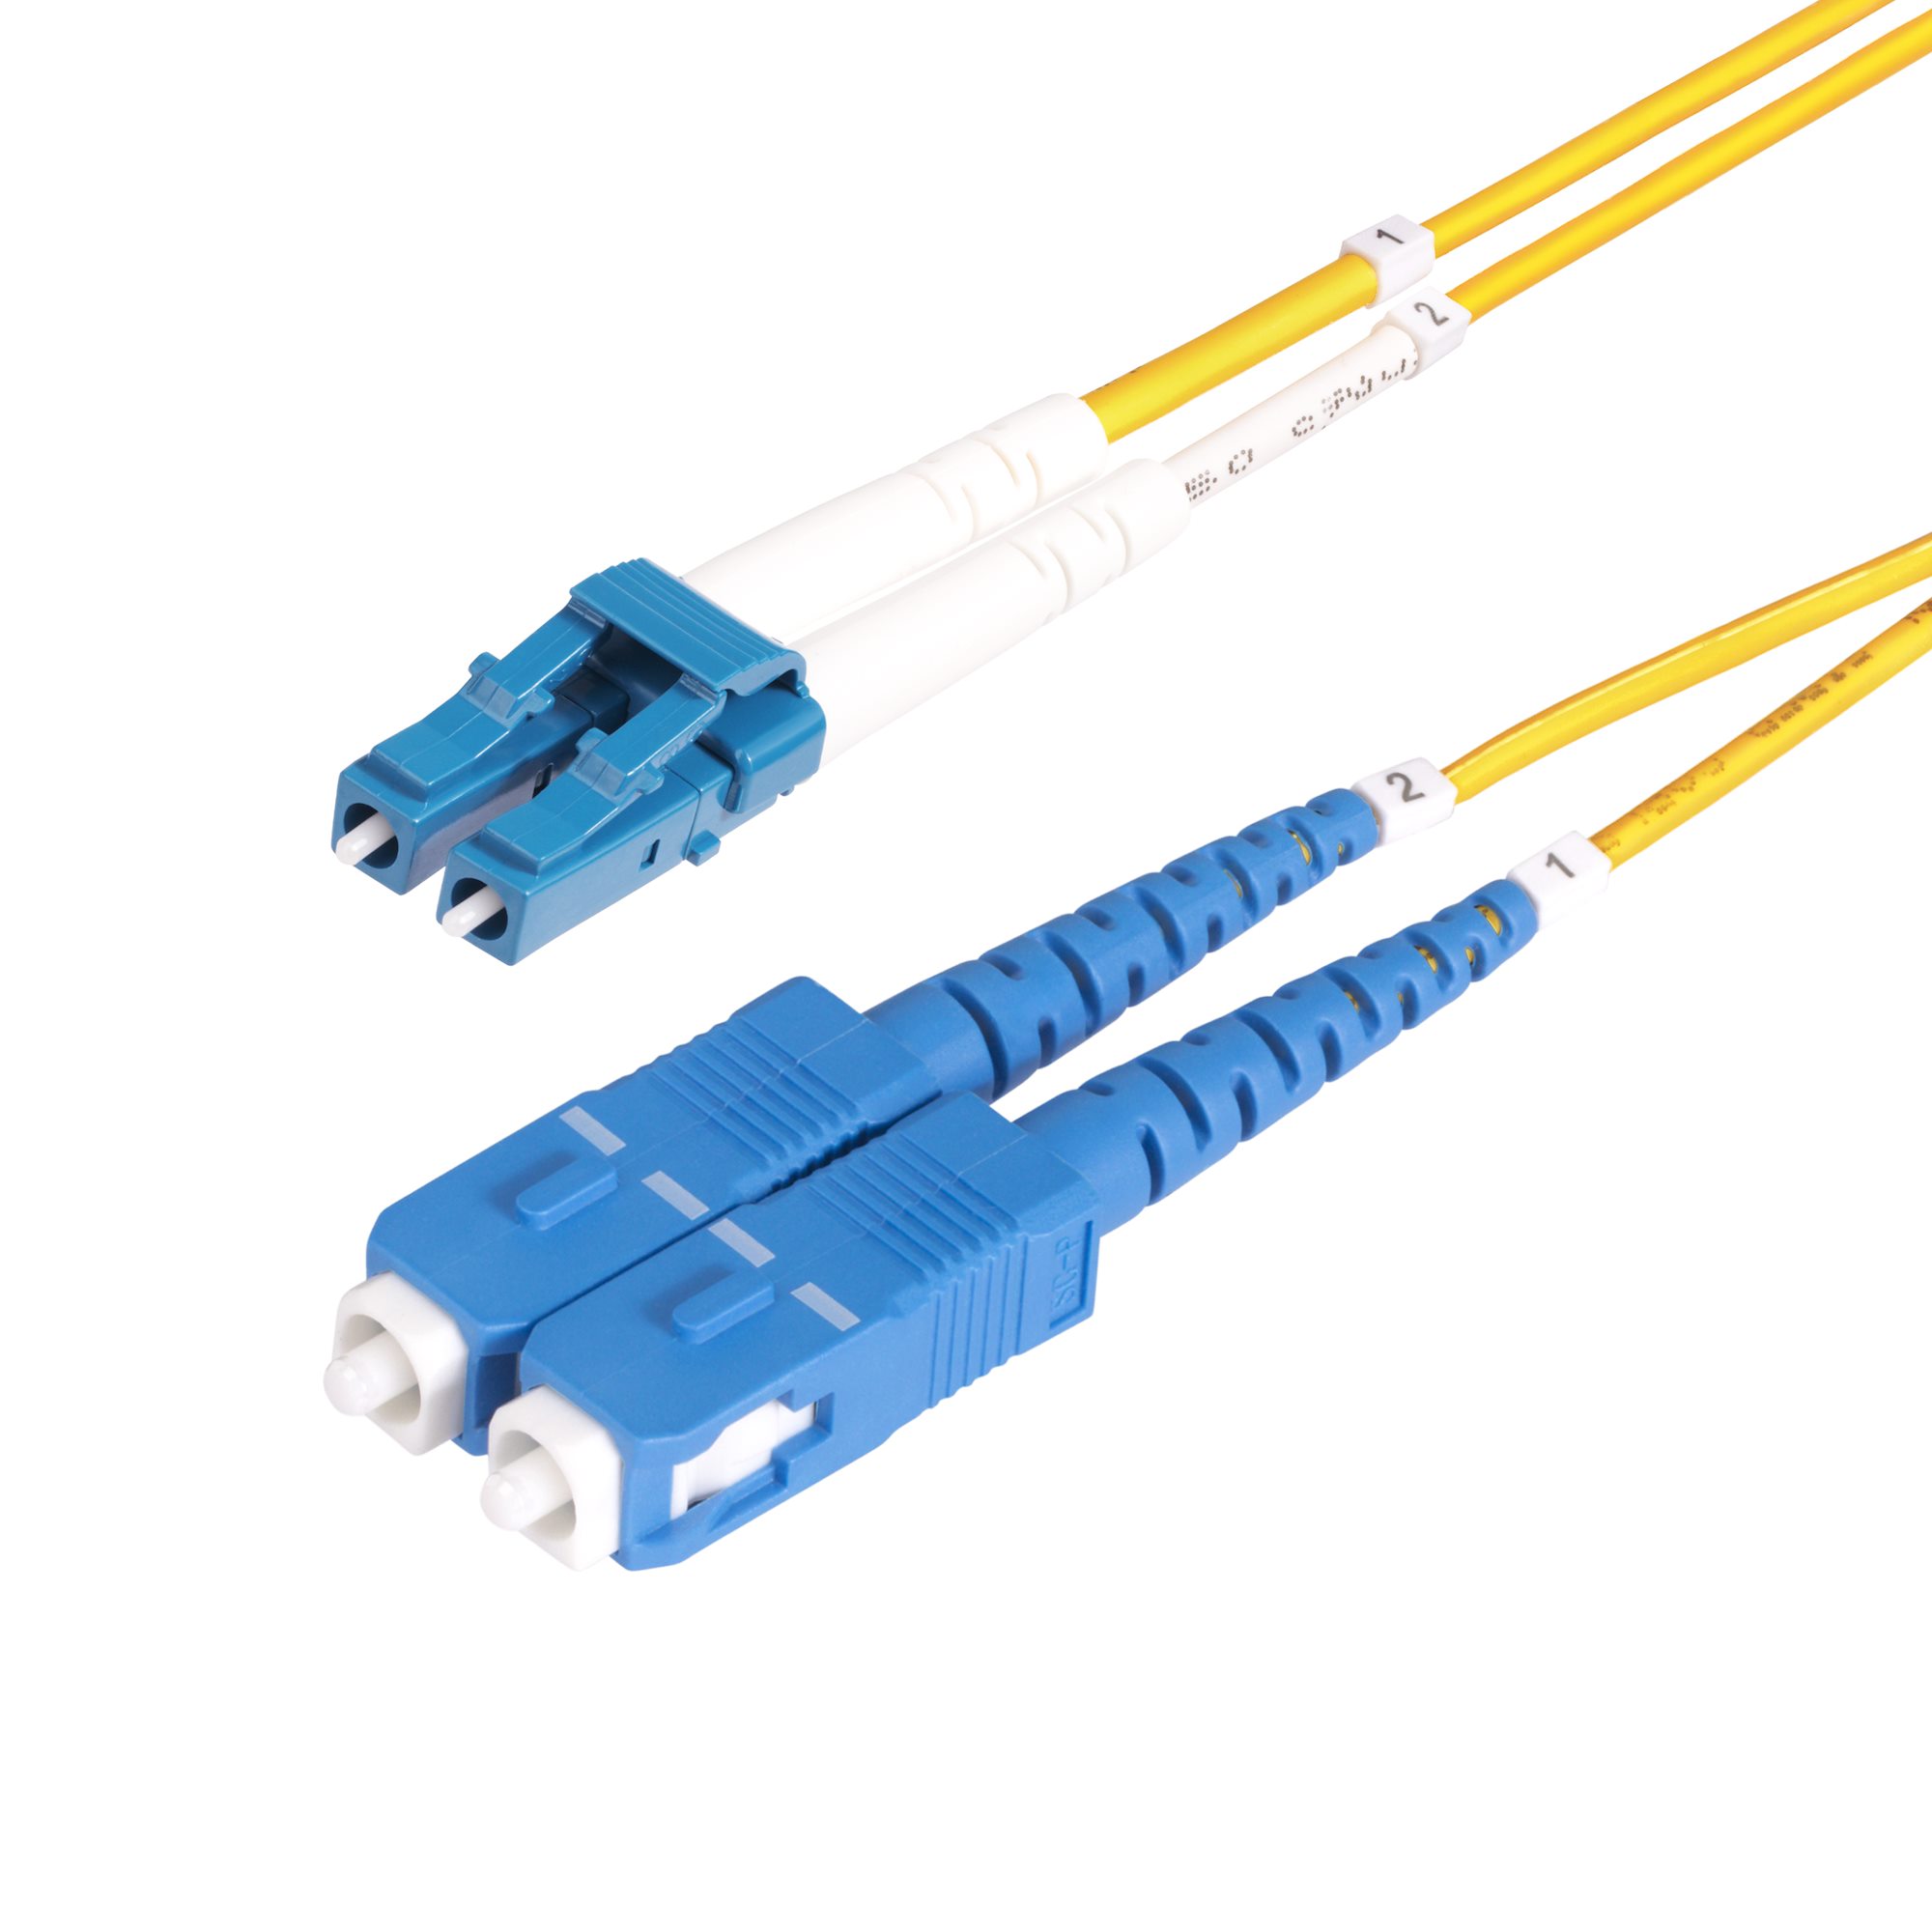 SMLCSC-OS2-1M Cable De Fibra Optica Lc A Sc Upc  Os2 Monomodo De 1M UPC 0065030903271